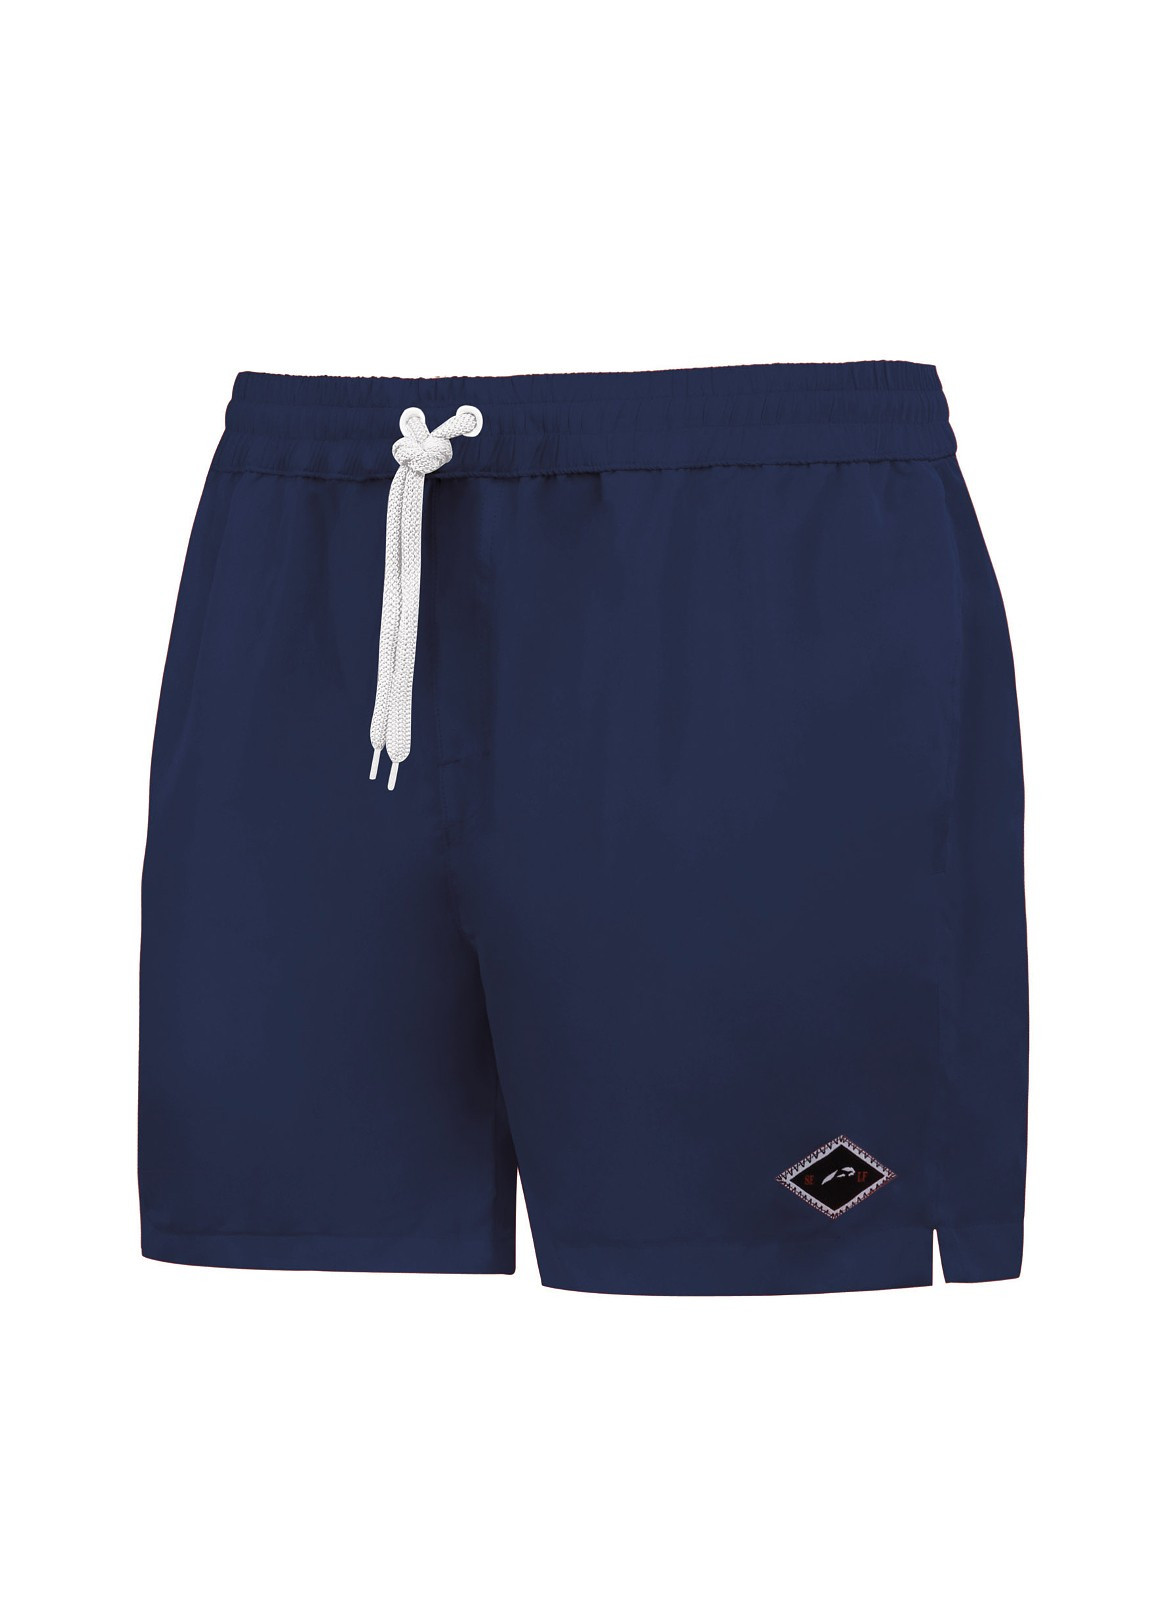 Pánské plavky - šortky Self SM 27 N Travel Shorts S-3XL modrá XXL